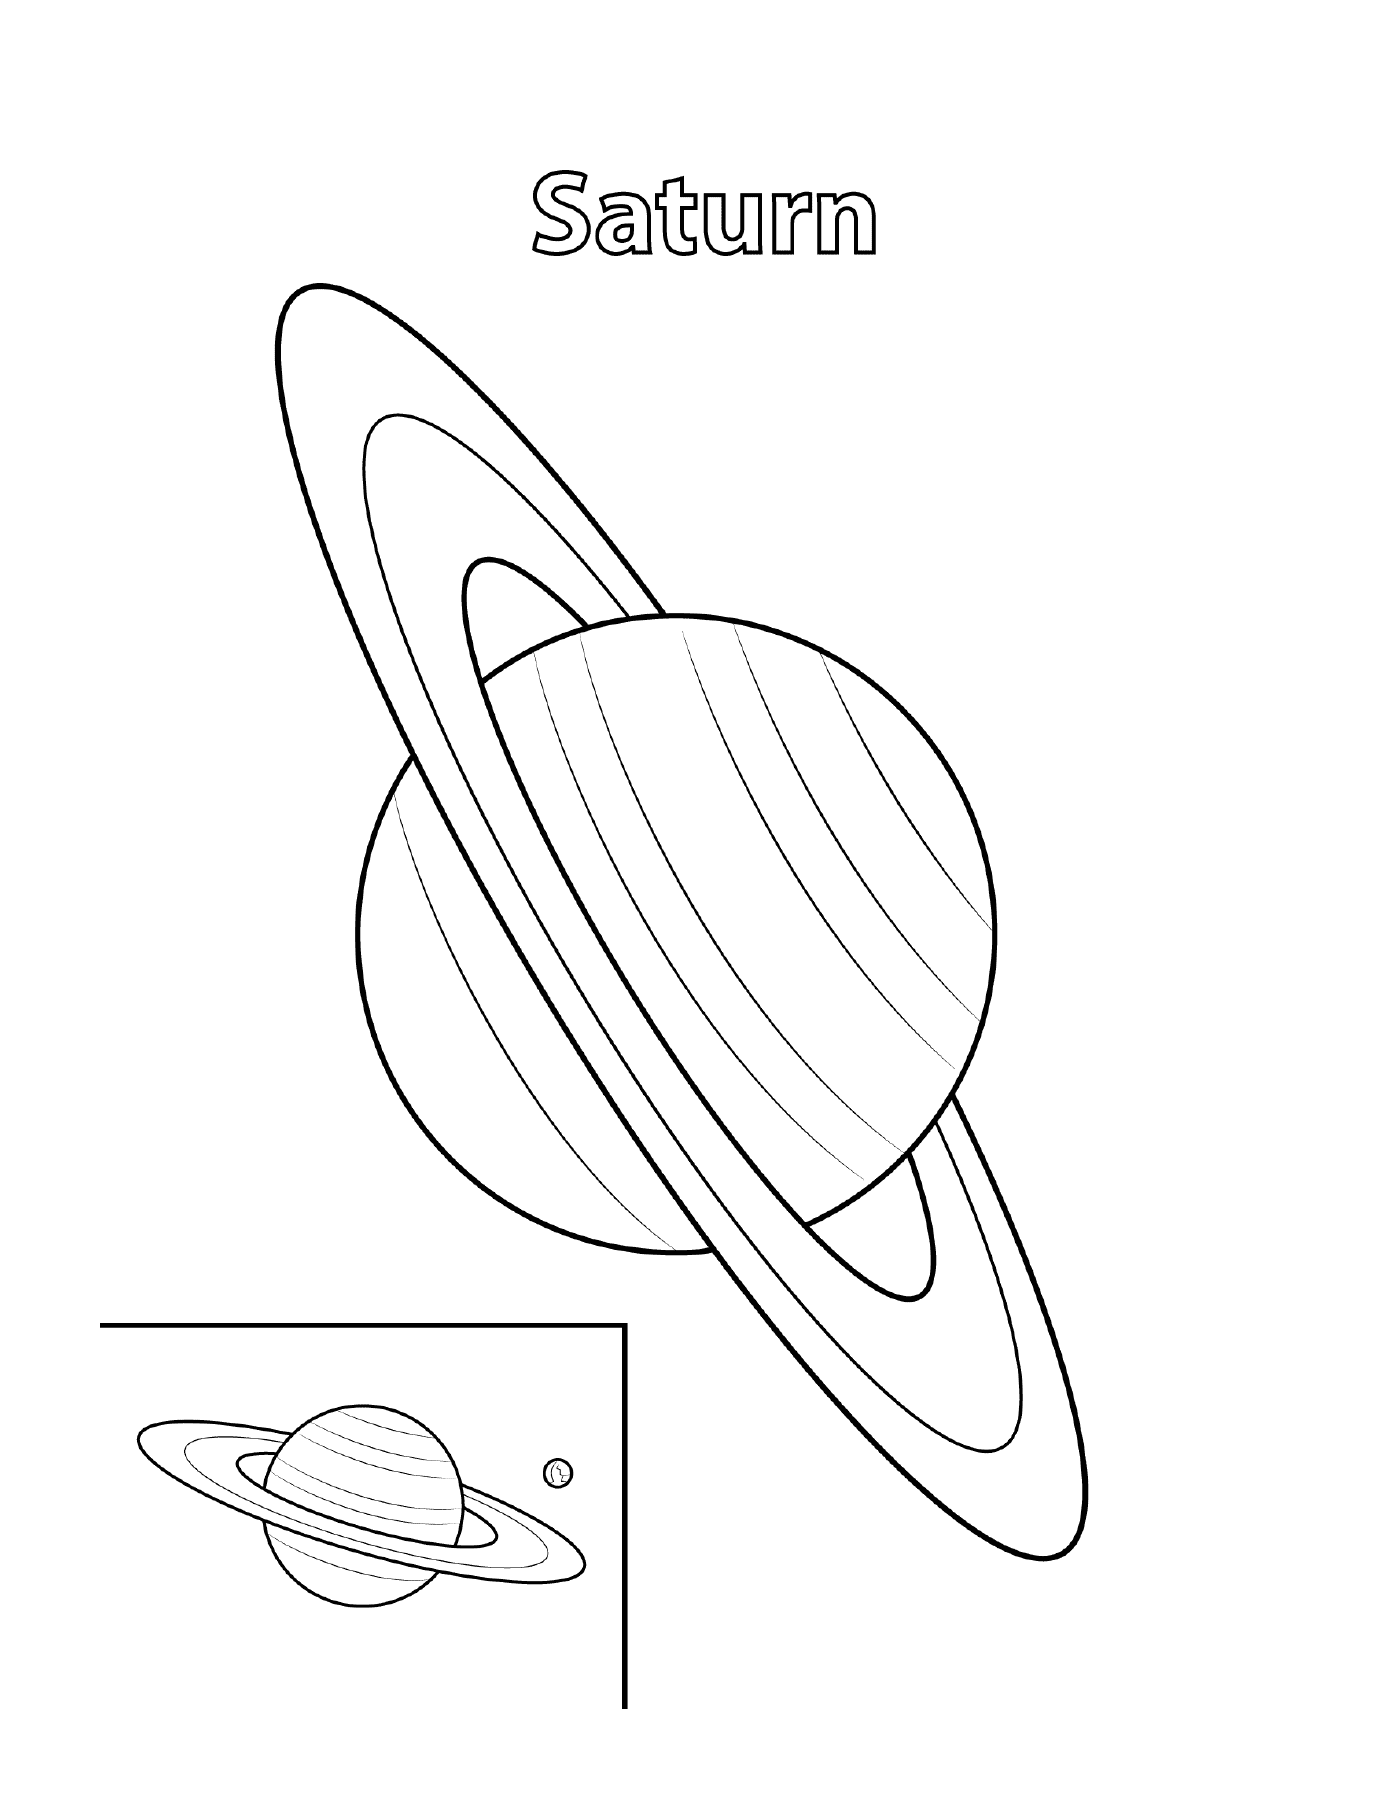  Contour de Saturno com inscrição 